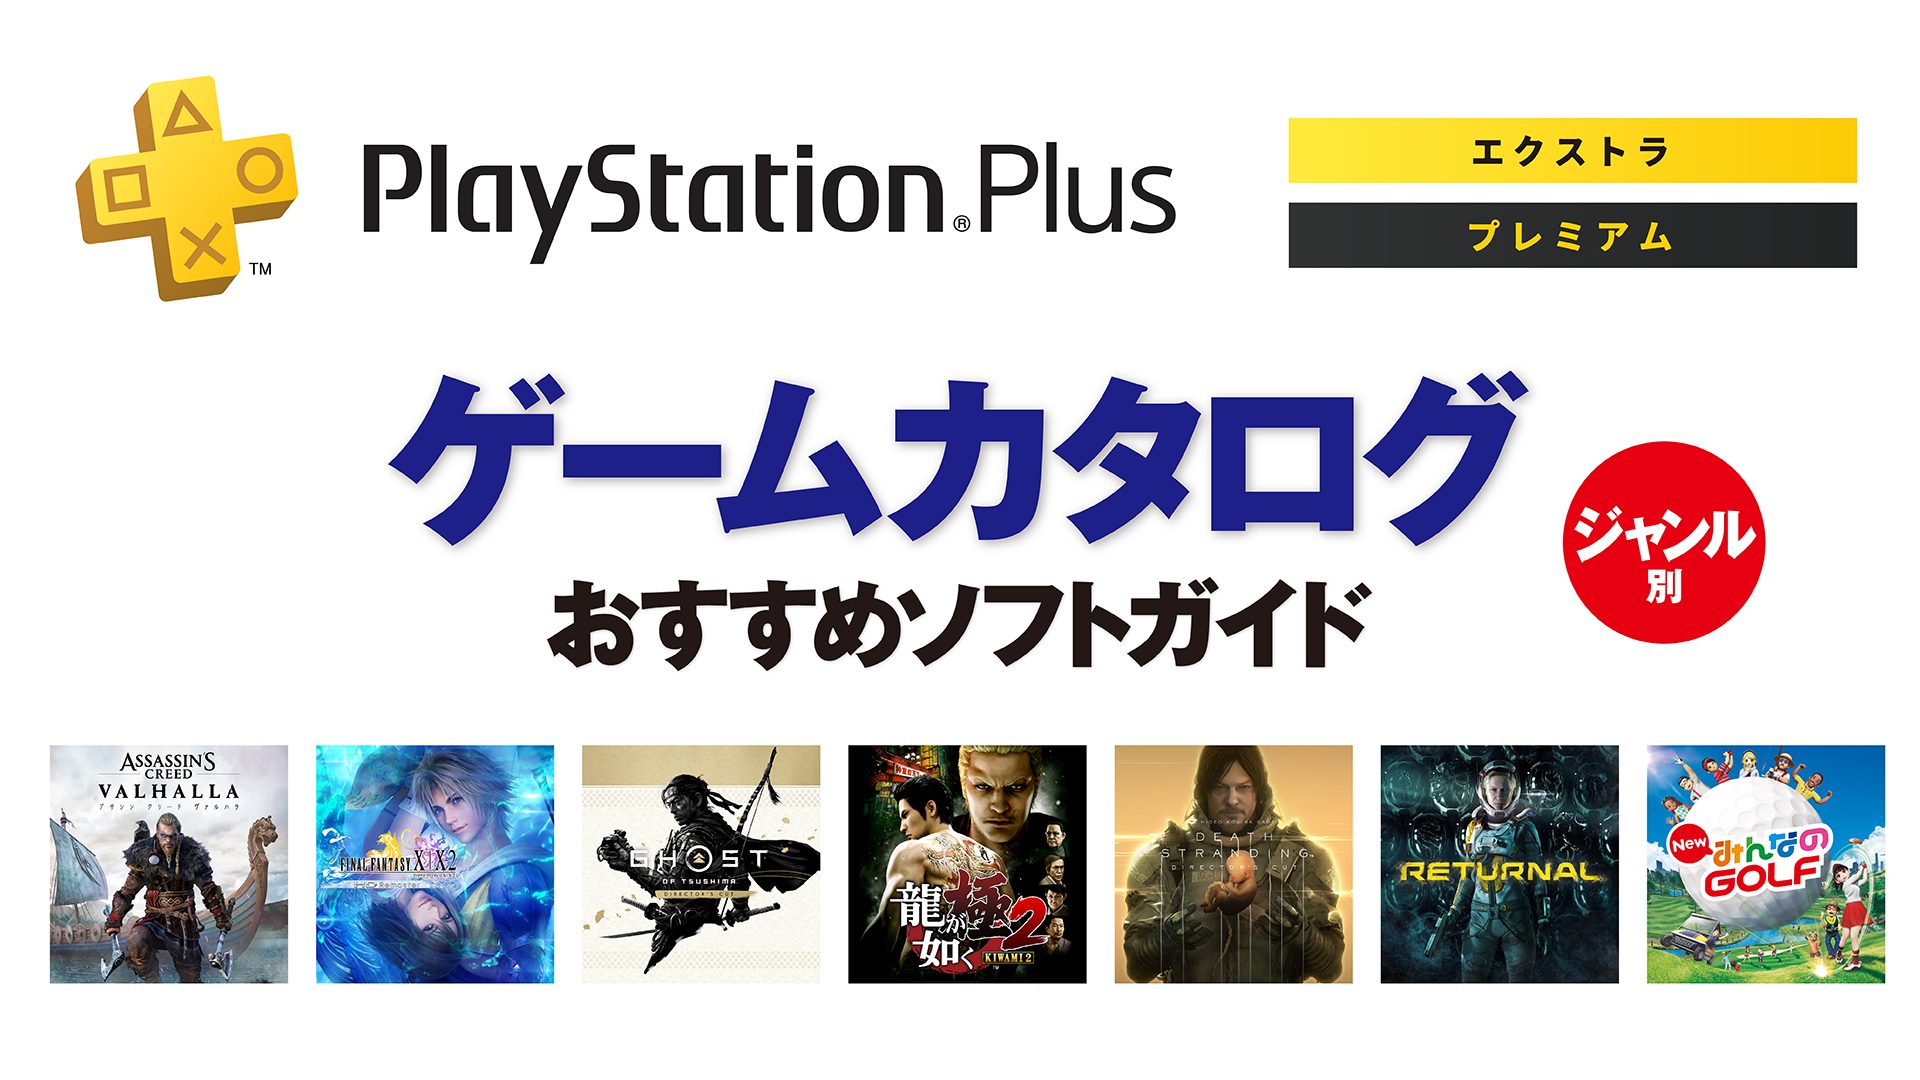 PlayStation®Plus「ゲームカタログ」最新おすすめガイド 2023 Spring ...